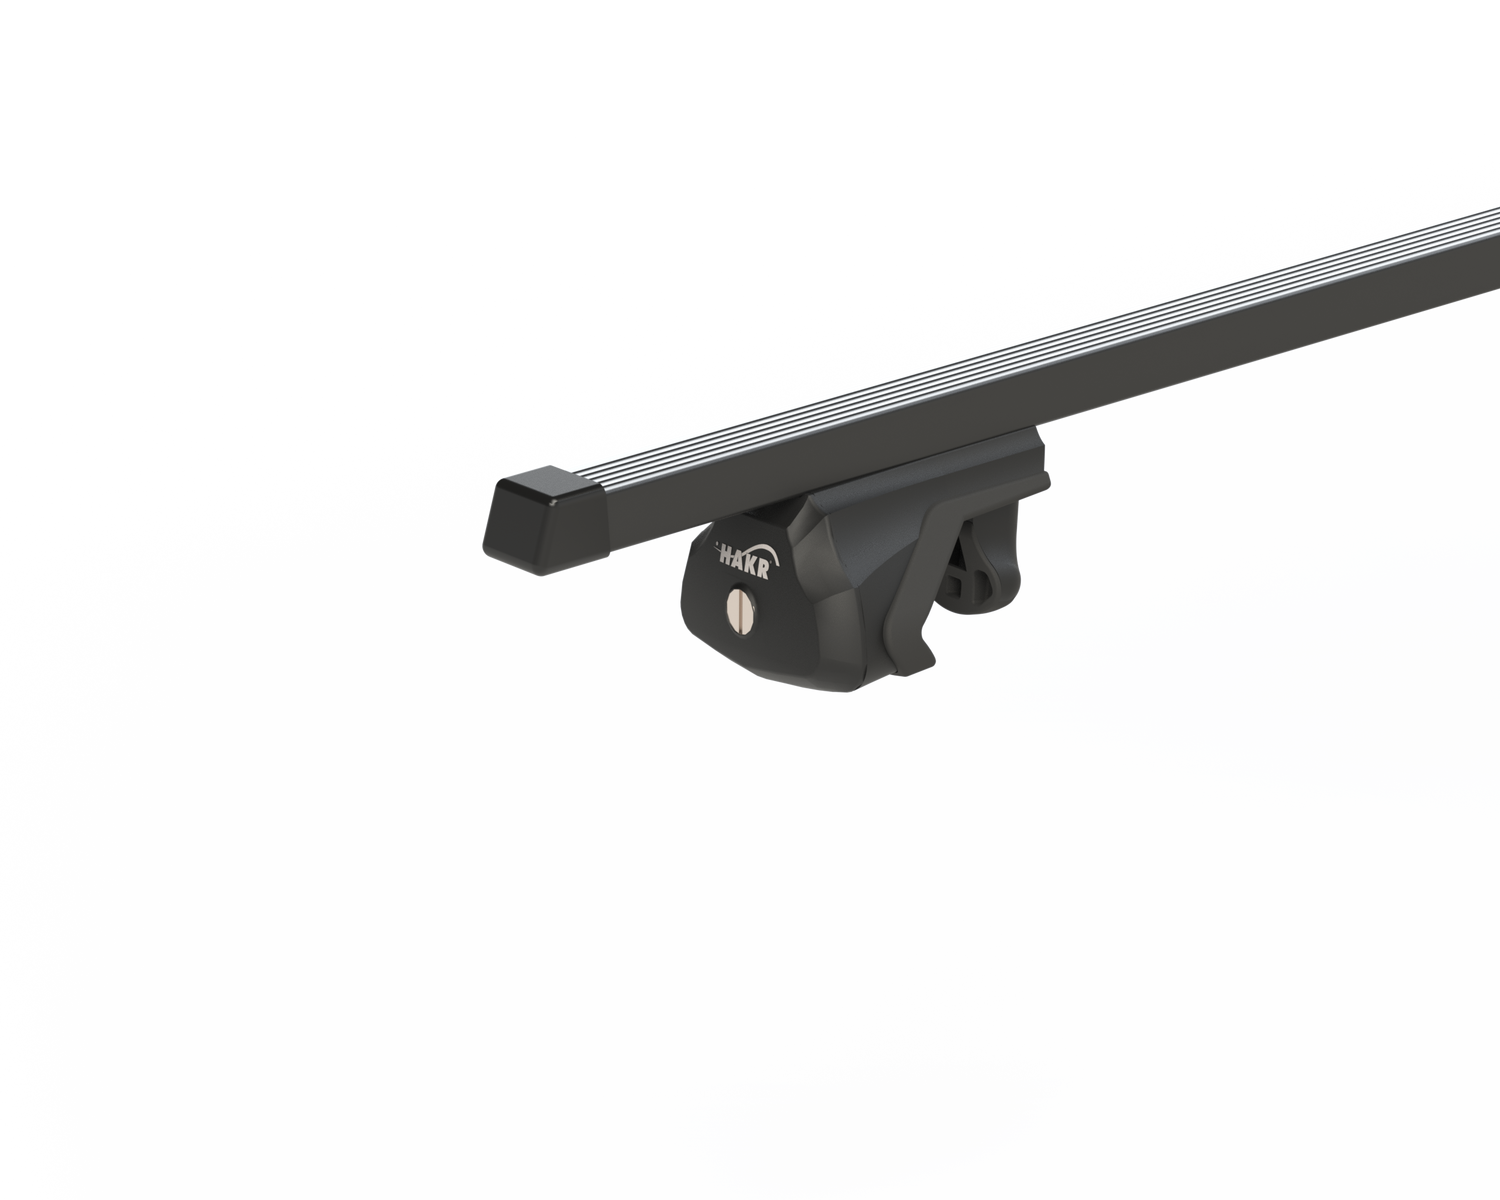 Strešný nosič OPEL SIGNUM 5dv combi s integrovanými pozdĺžnikmi, čierna Fe tyč